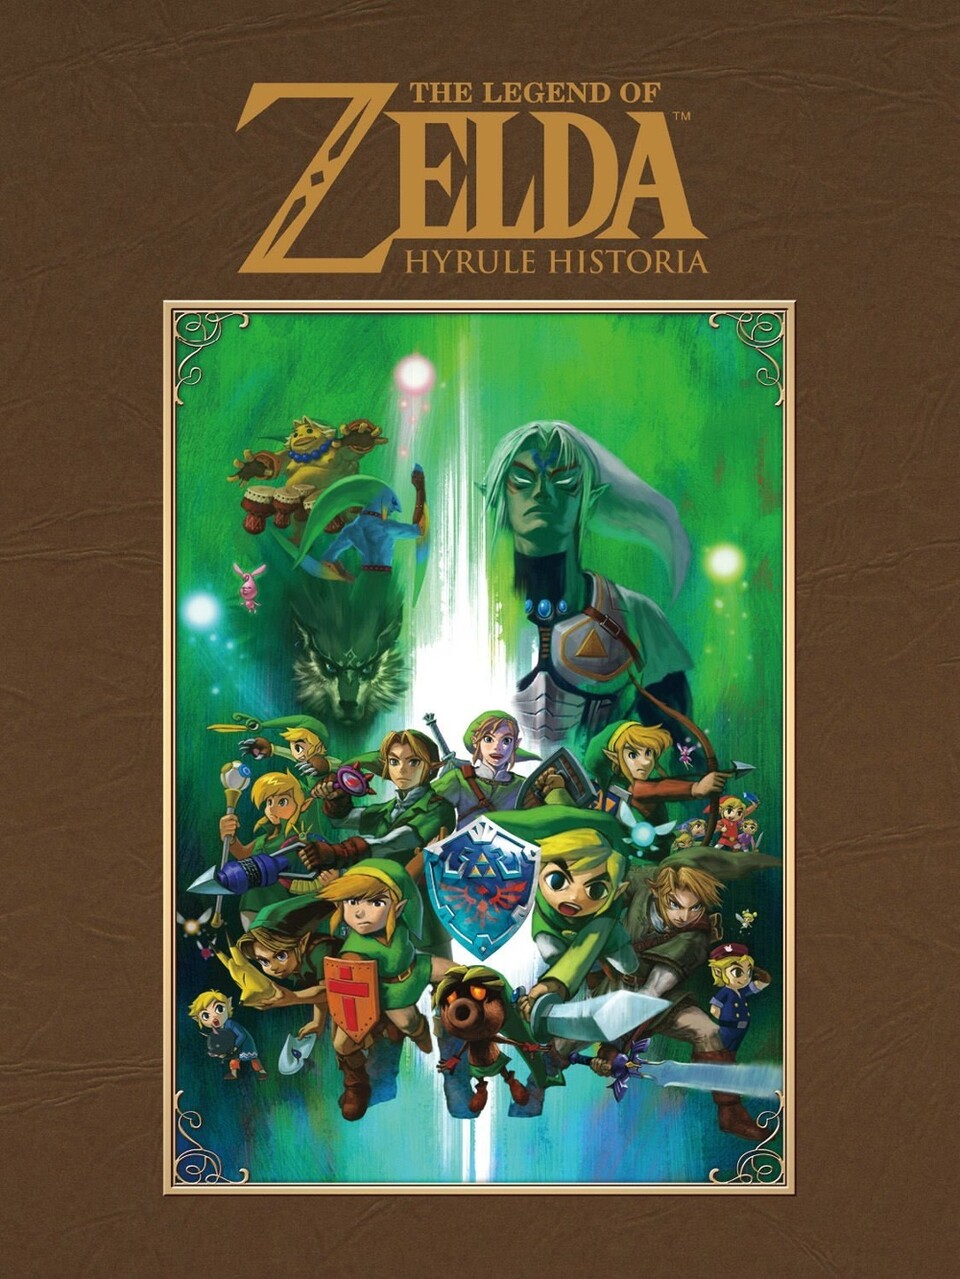 The Legend of Zelda: Hyrule Historia bricht schon in den ersten Wochen Verkaufs-Rekorde.